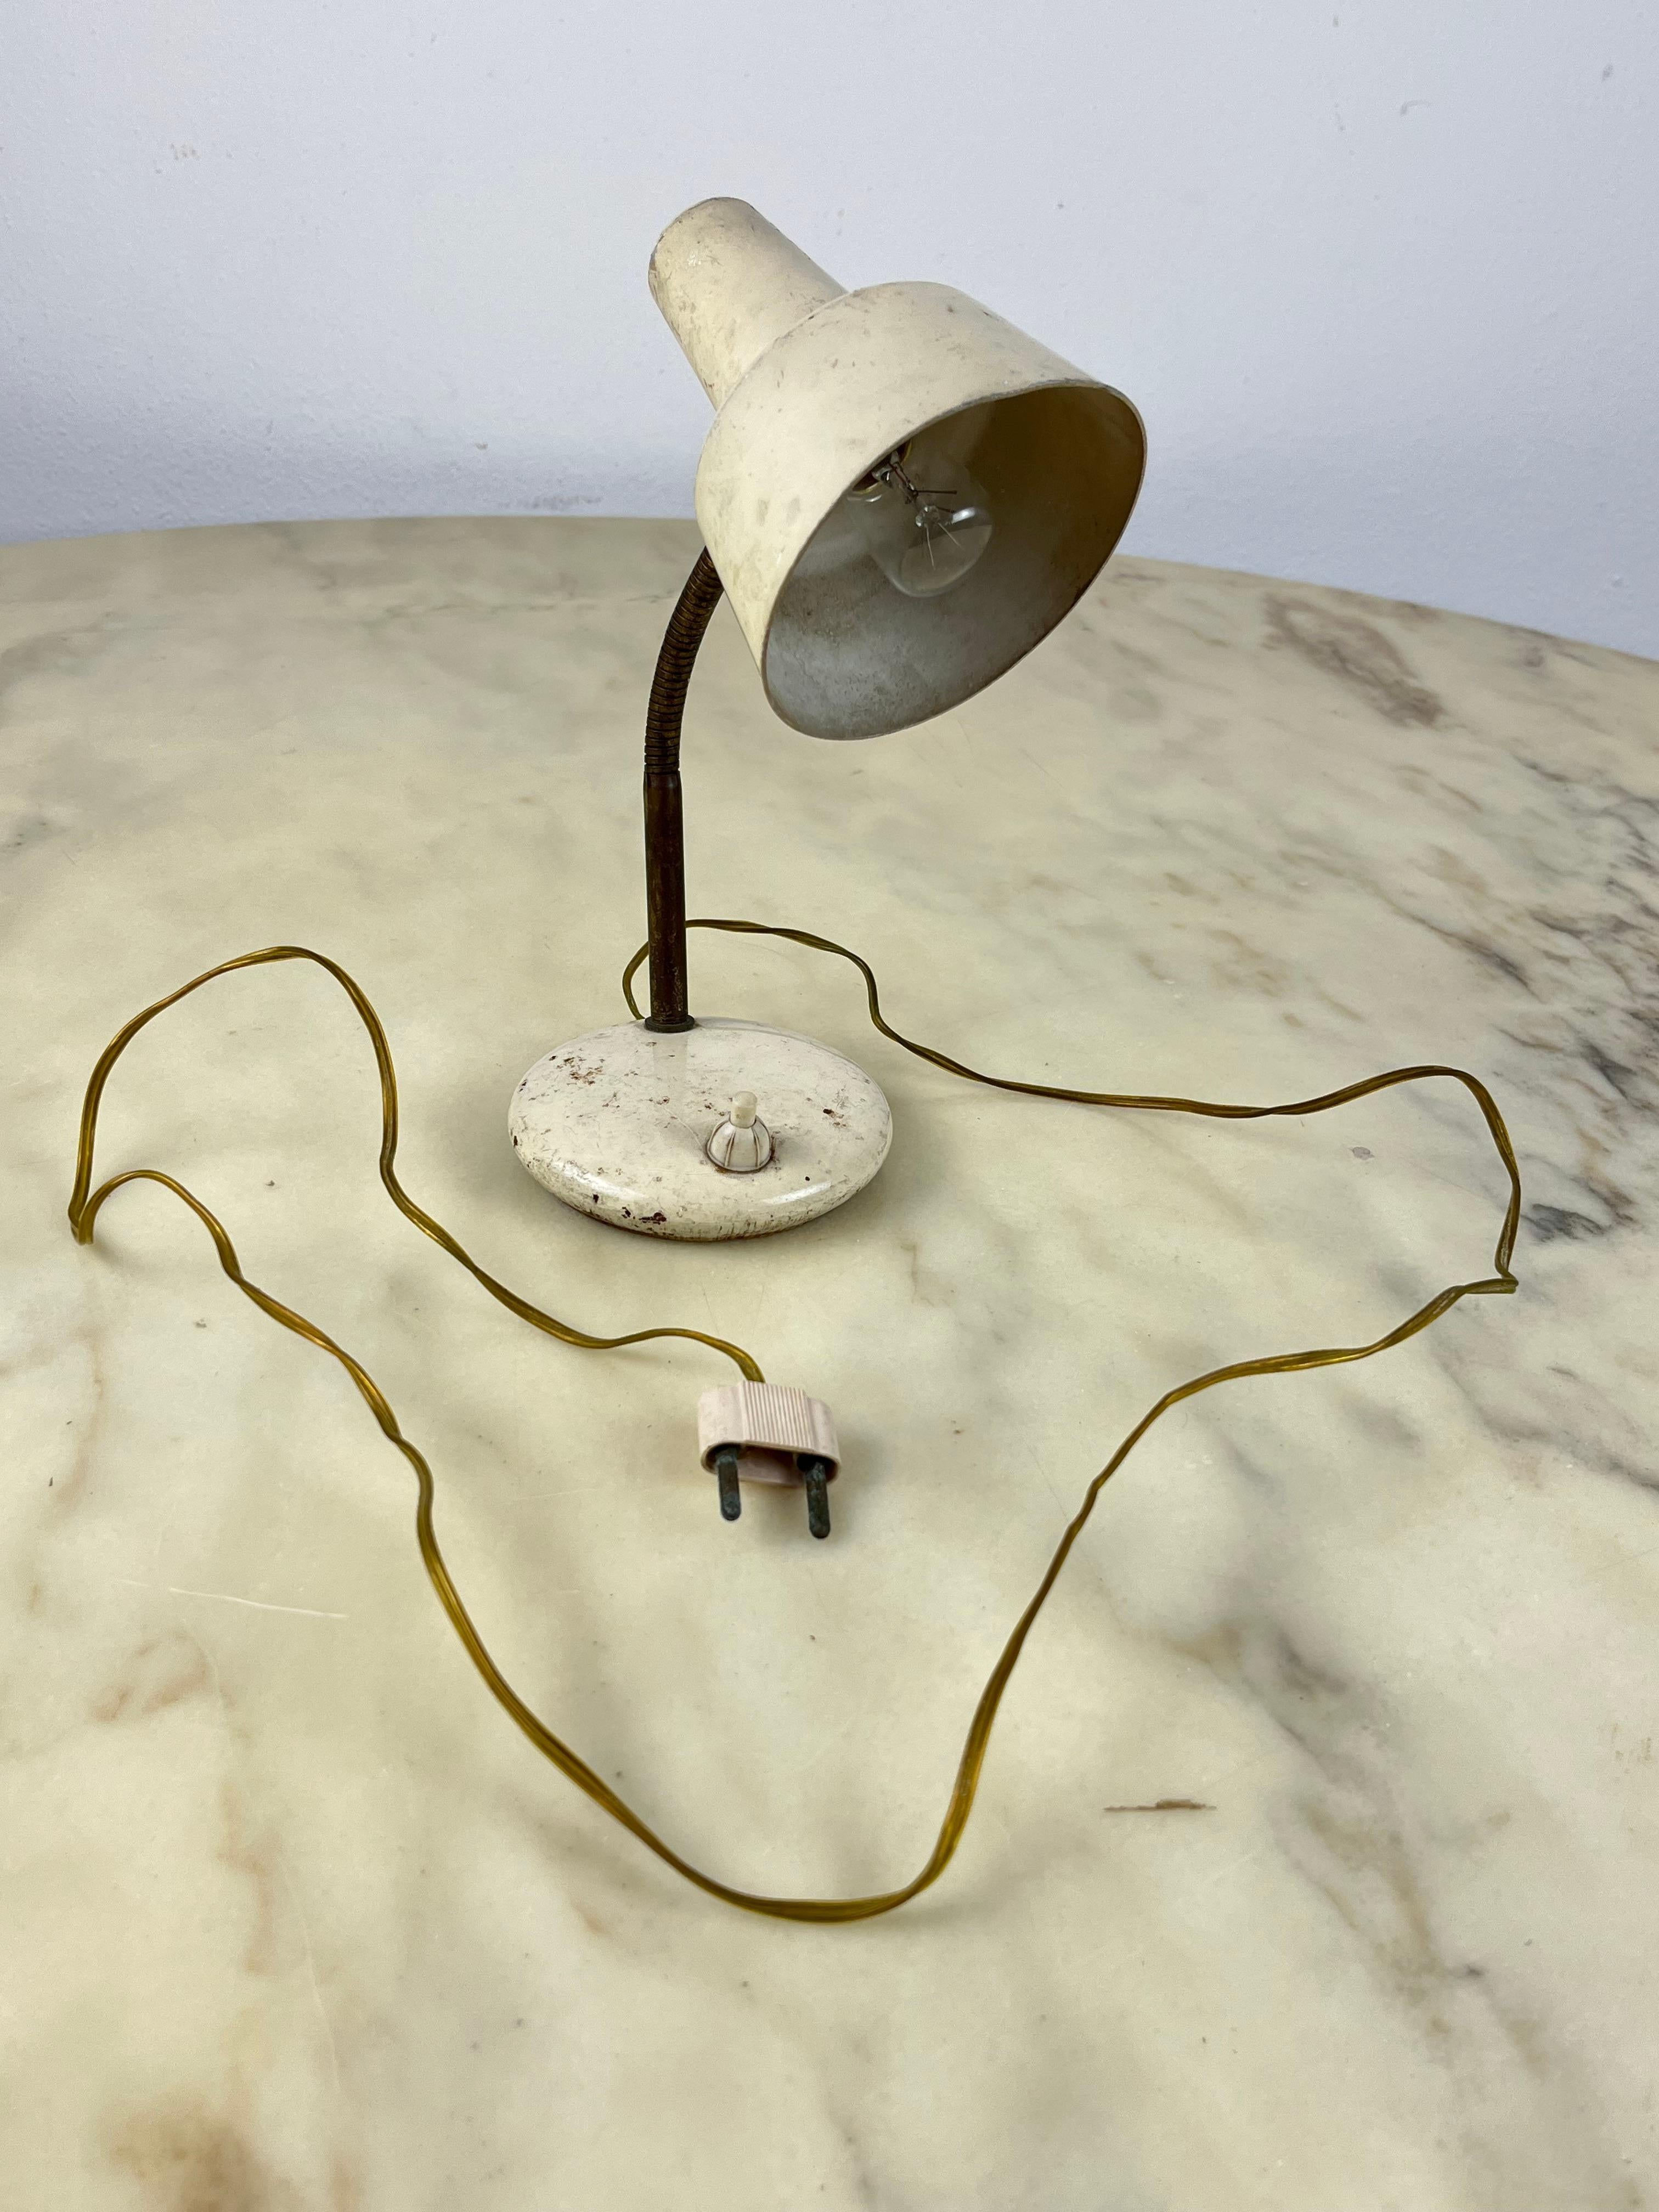 Tischleuchte aus lackiertem Metall und Messing, Italien, 1950er Jahre
Originales elektrisches Kabel und Stecker aus der Zeit. Wir können Adapter für den Einsatz im Ausland bereitstellen.
Intakt und funktionsfähig, guter Zustand, geringe